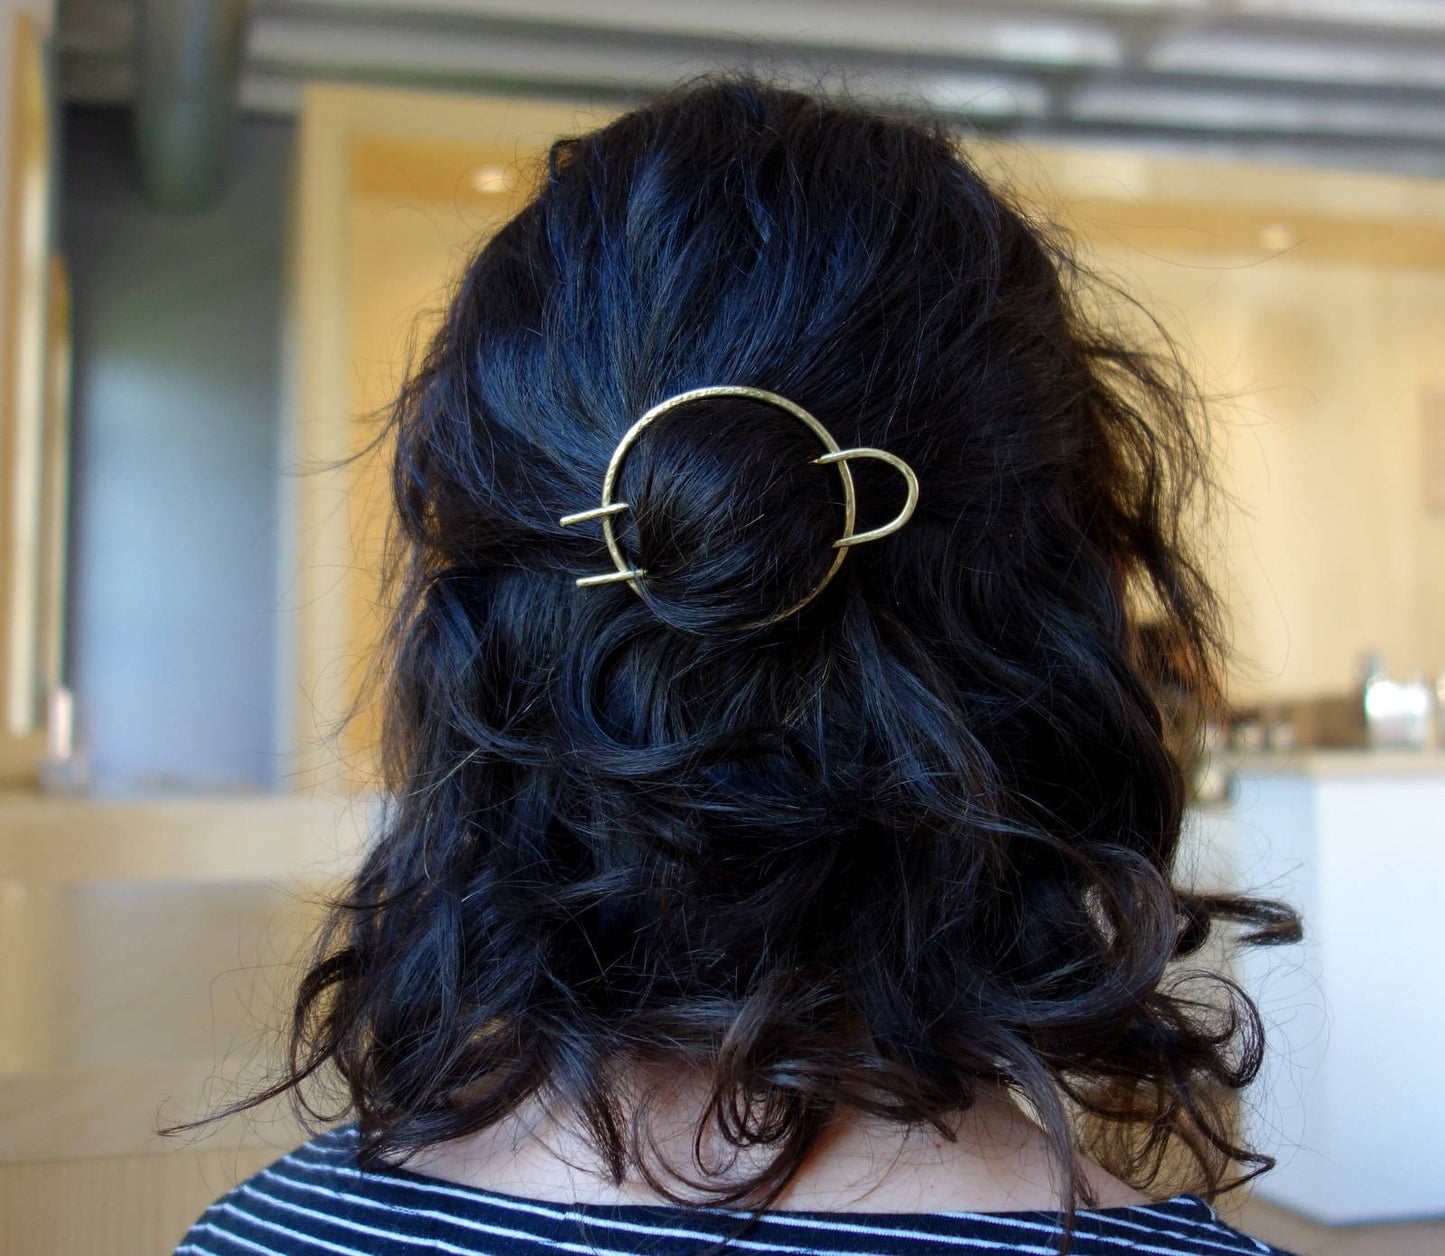 Minimalist Gold Hair Accessories, Brass Hair Clip, Round Barrette, Hair  Pin, Gold Hair Slide, Geometric Hair Clip 